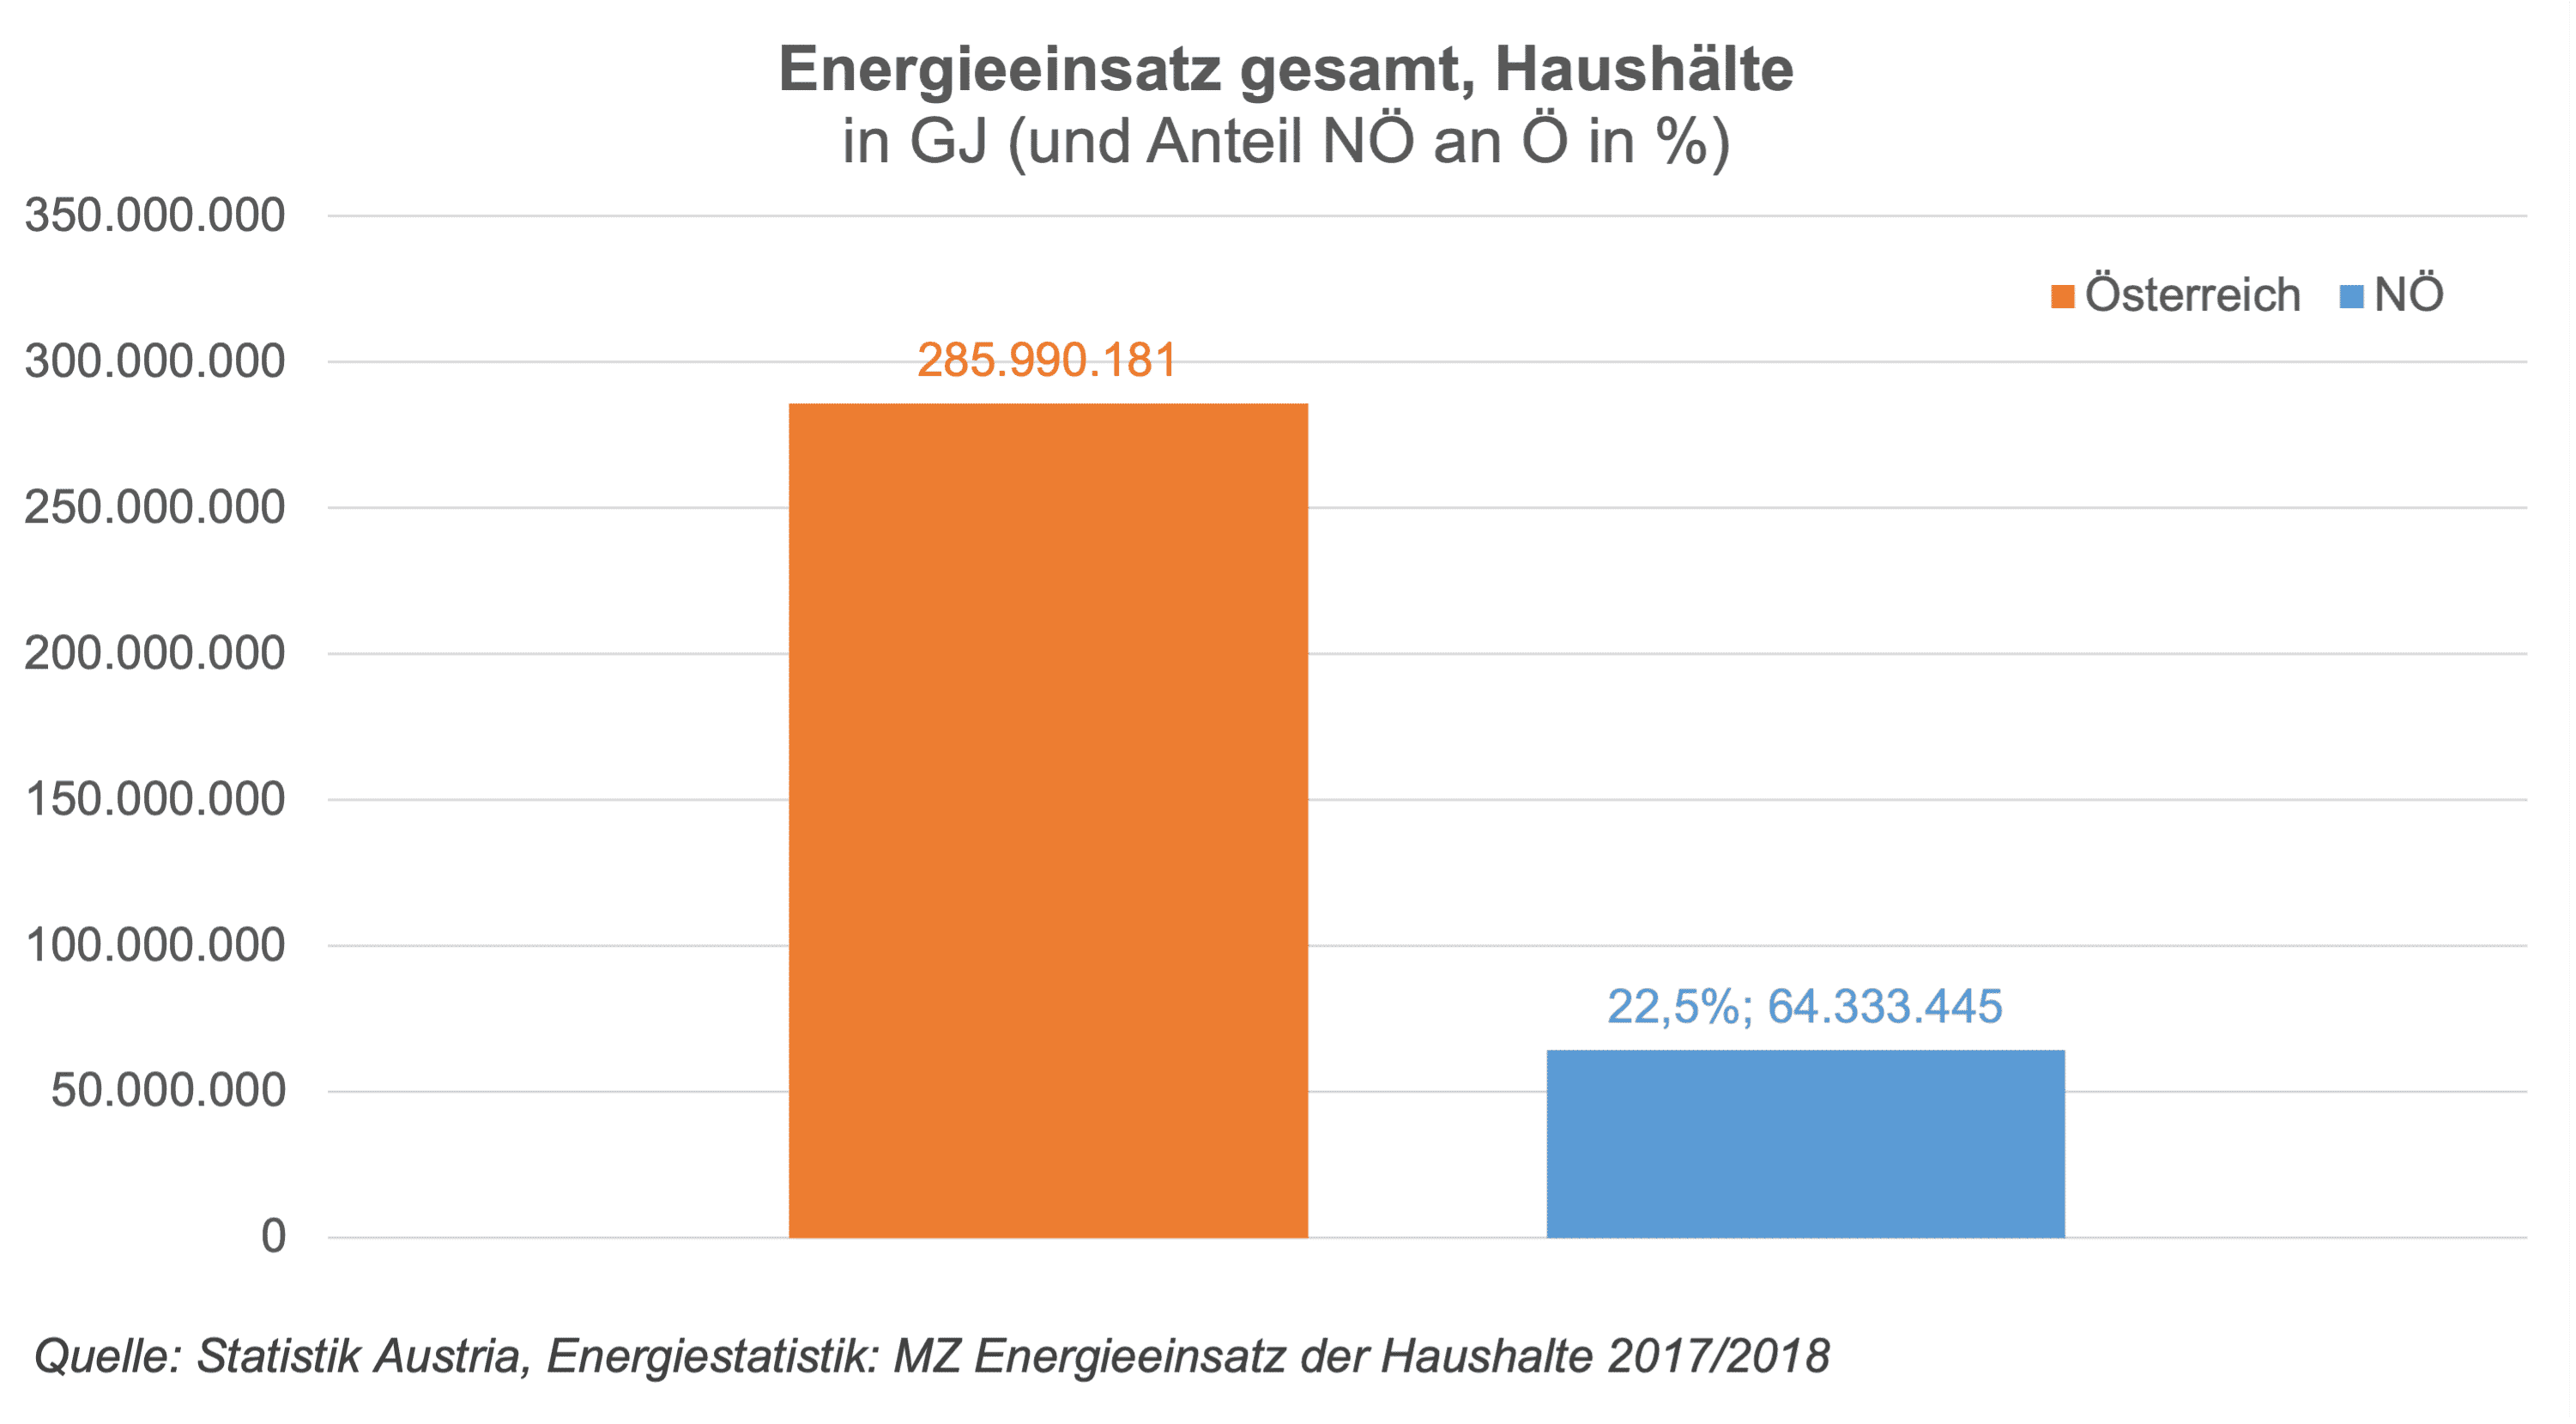 Der gesamte Energieeinsatz in Niederösterreich betrug 2019 insgesamt 64.333.445 GJ. Das sind 22,5% vom Österreichischen Energieeinsatz.